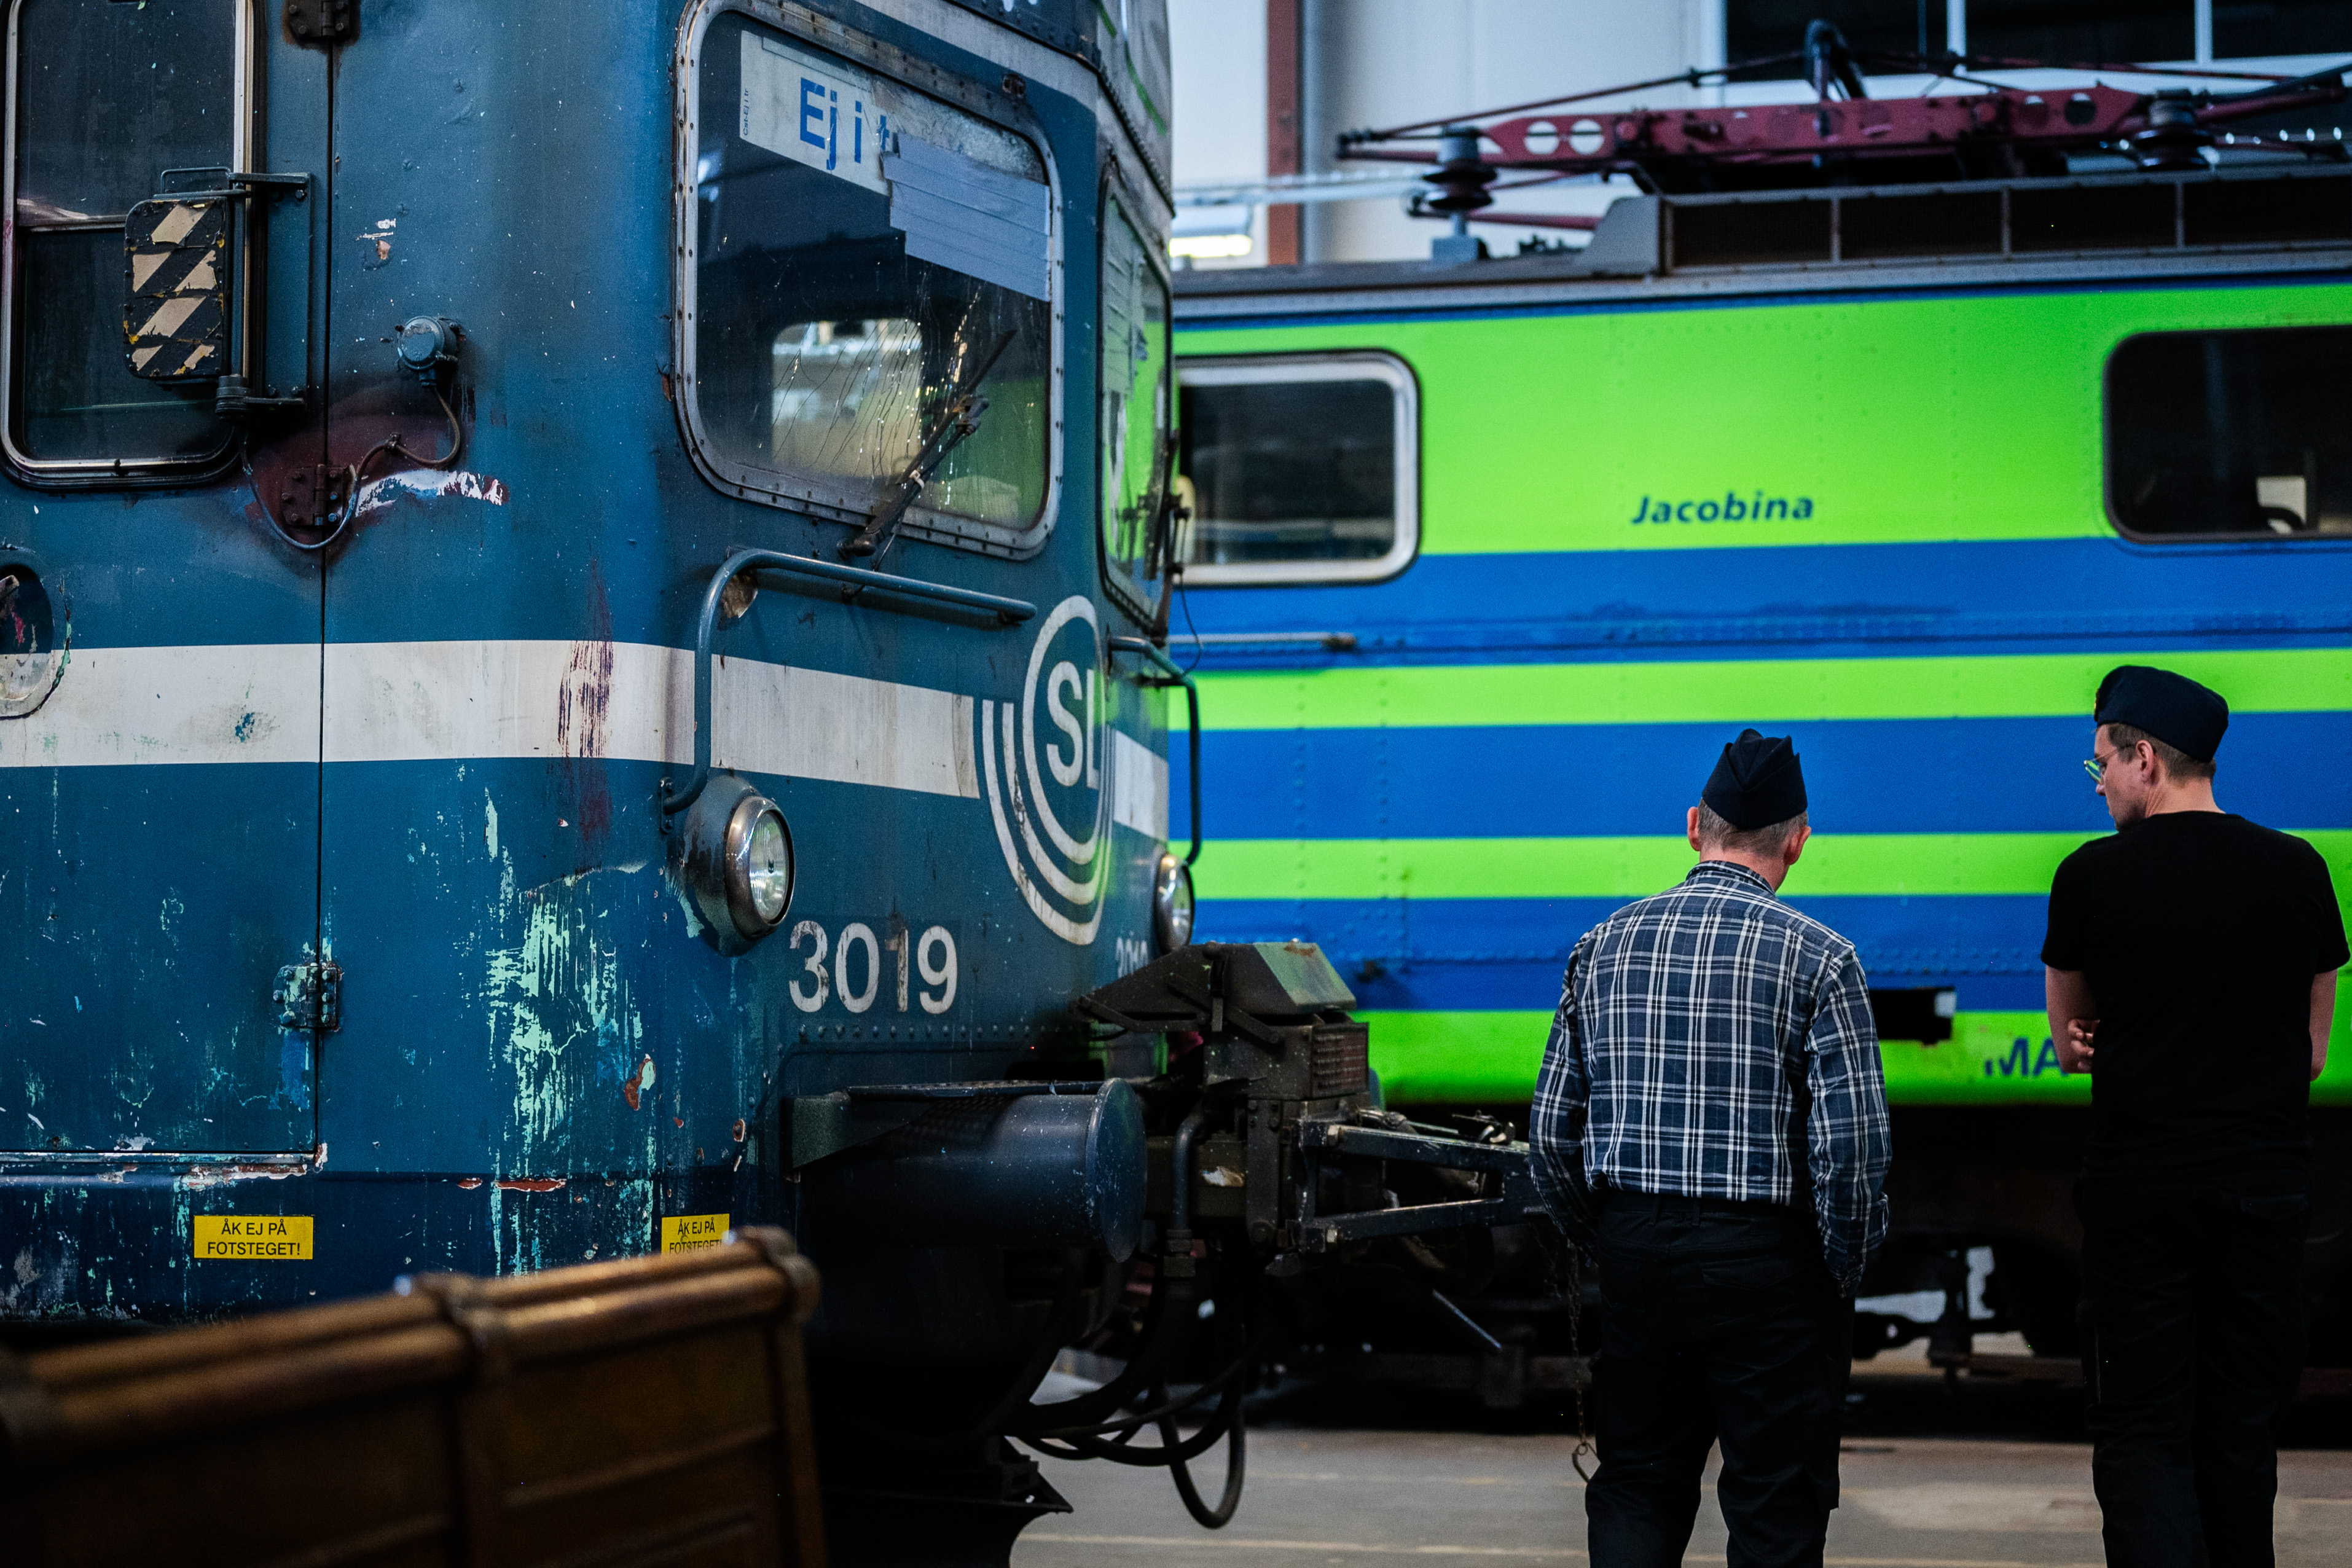 En blå tågvagn med SL loggan syns till vänster i bild. till höger står två män och kollar på en grön/blå vagn som skymtas i bakgrunden.